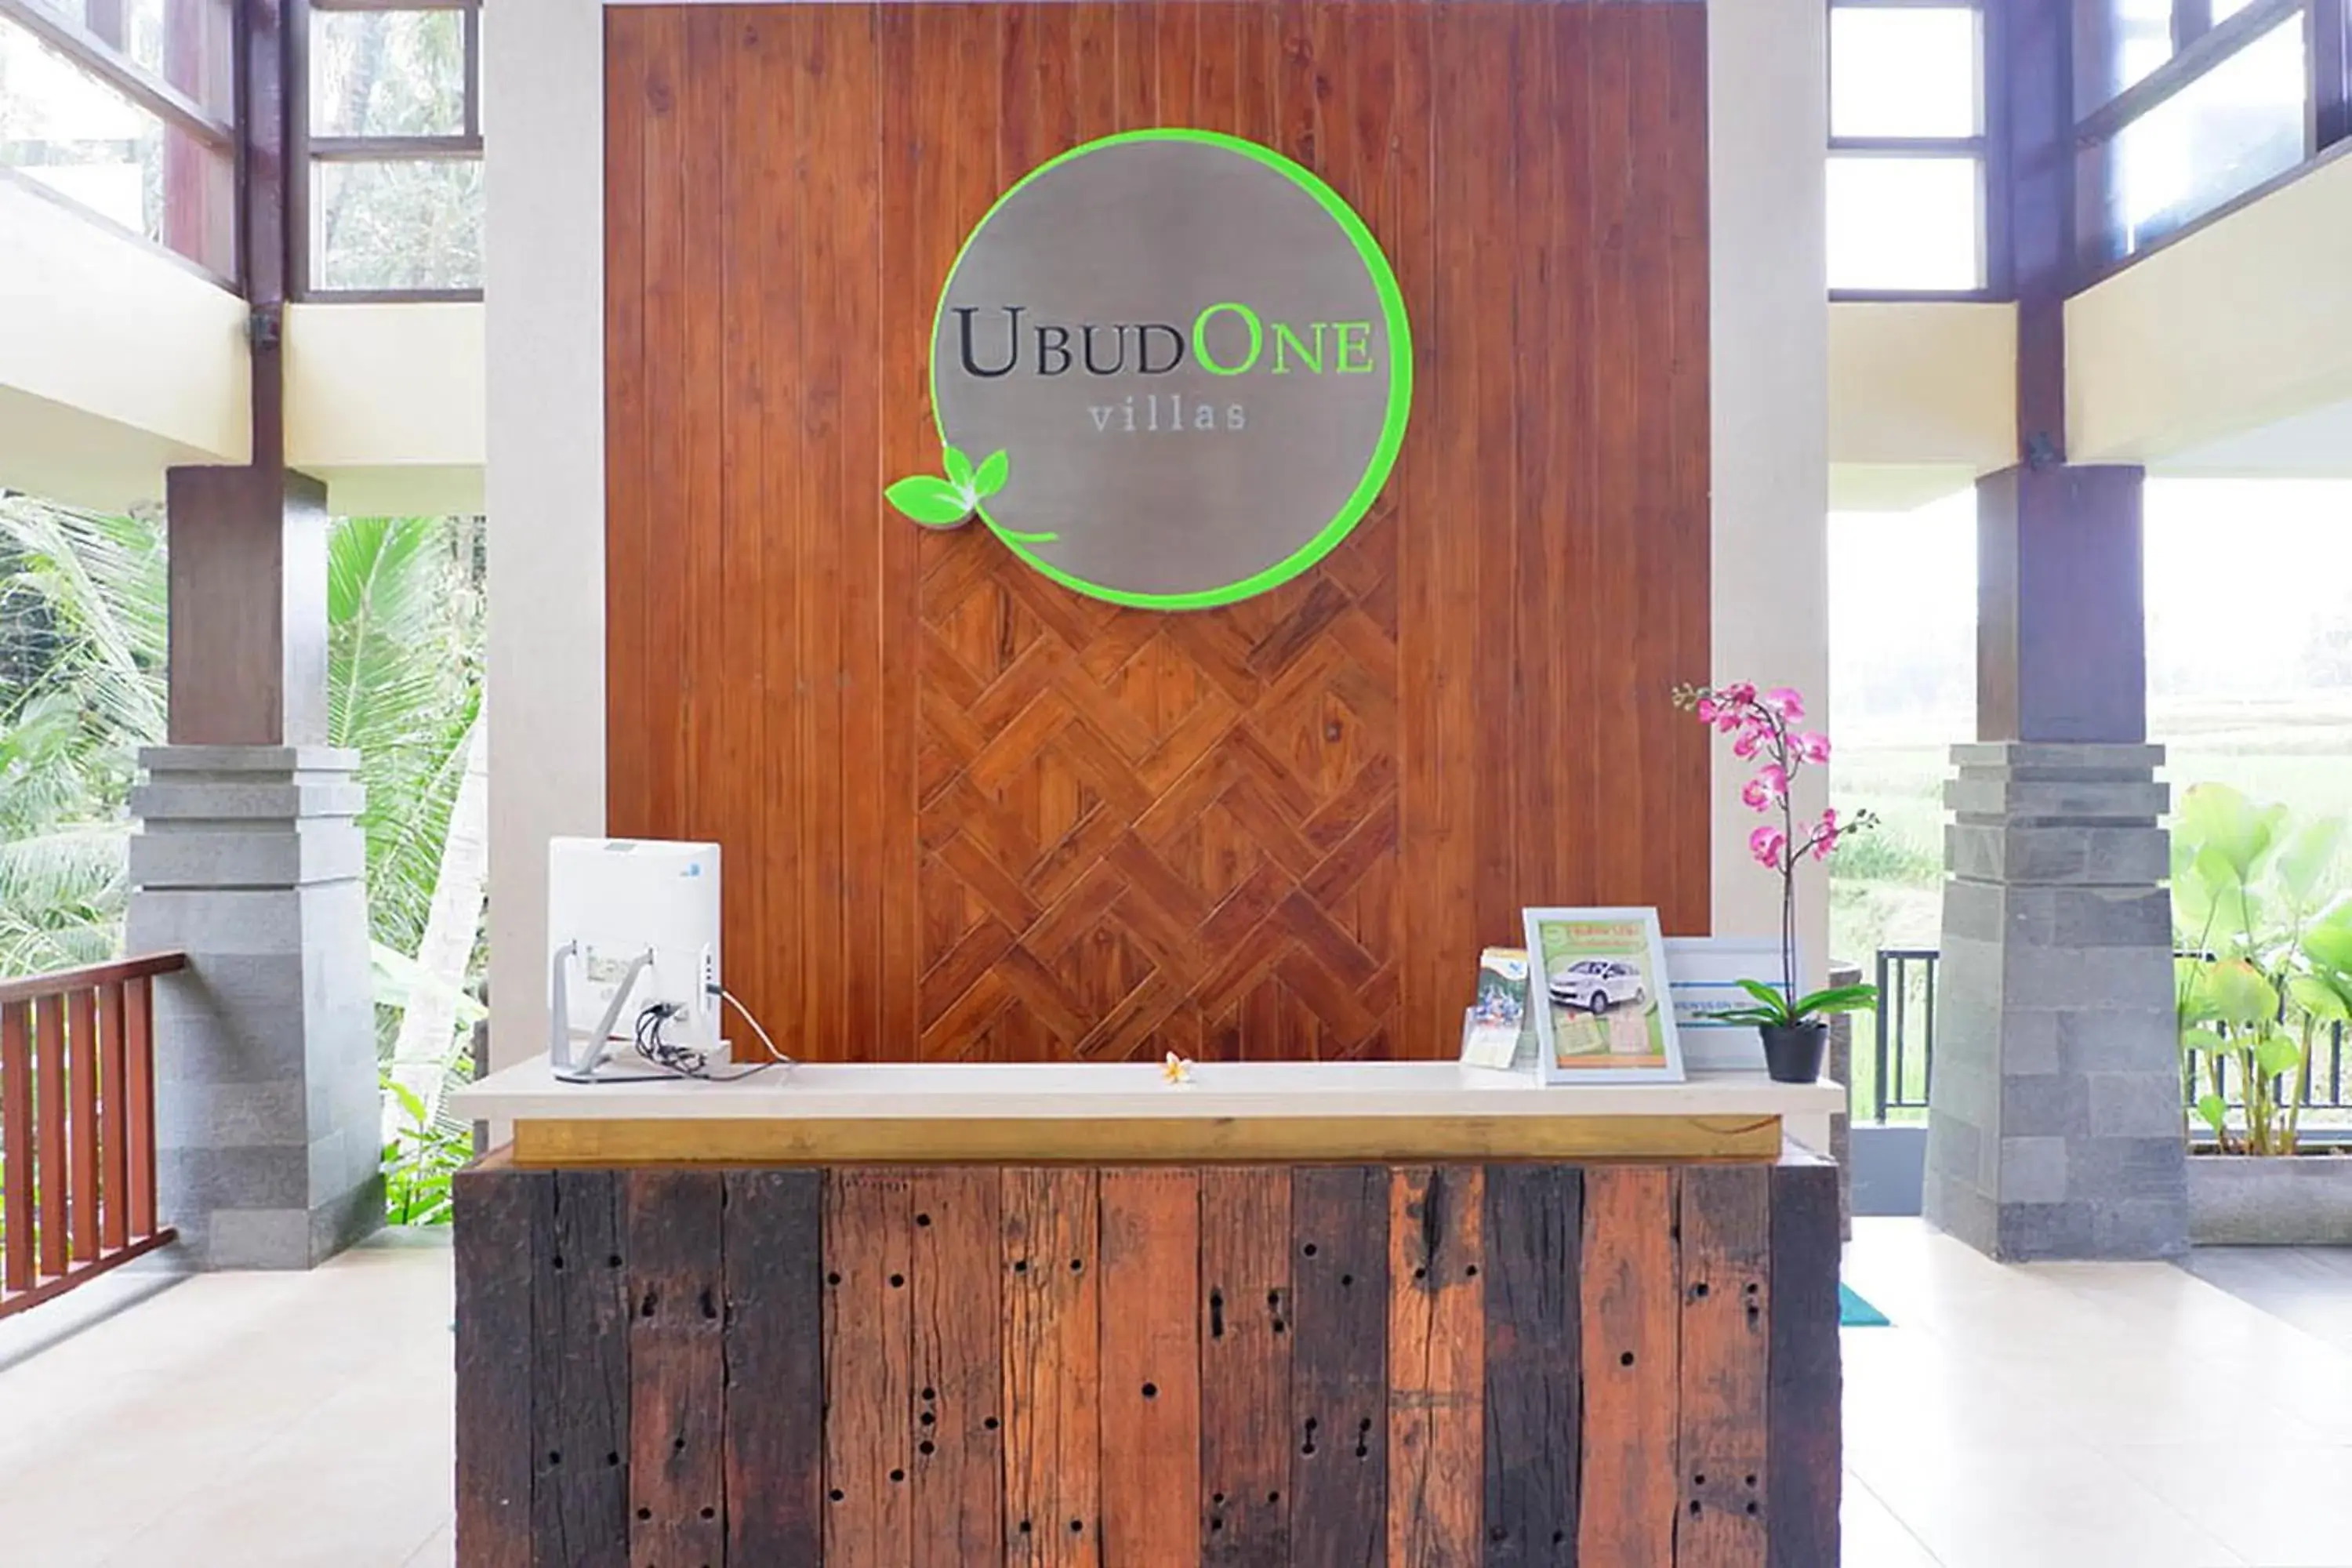 Lobby or reception, Lobby/Reception in UbudOne